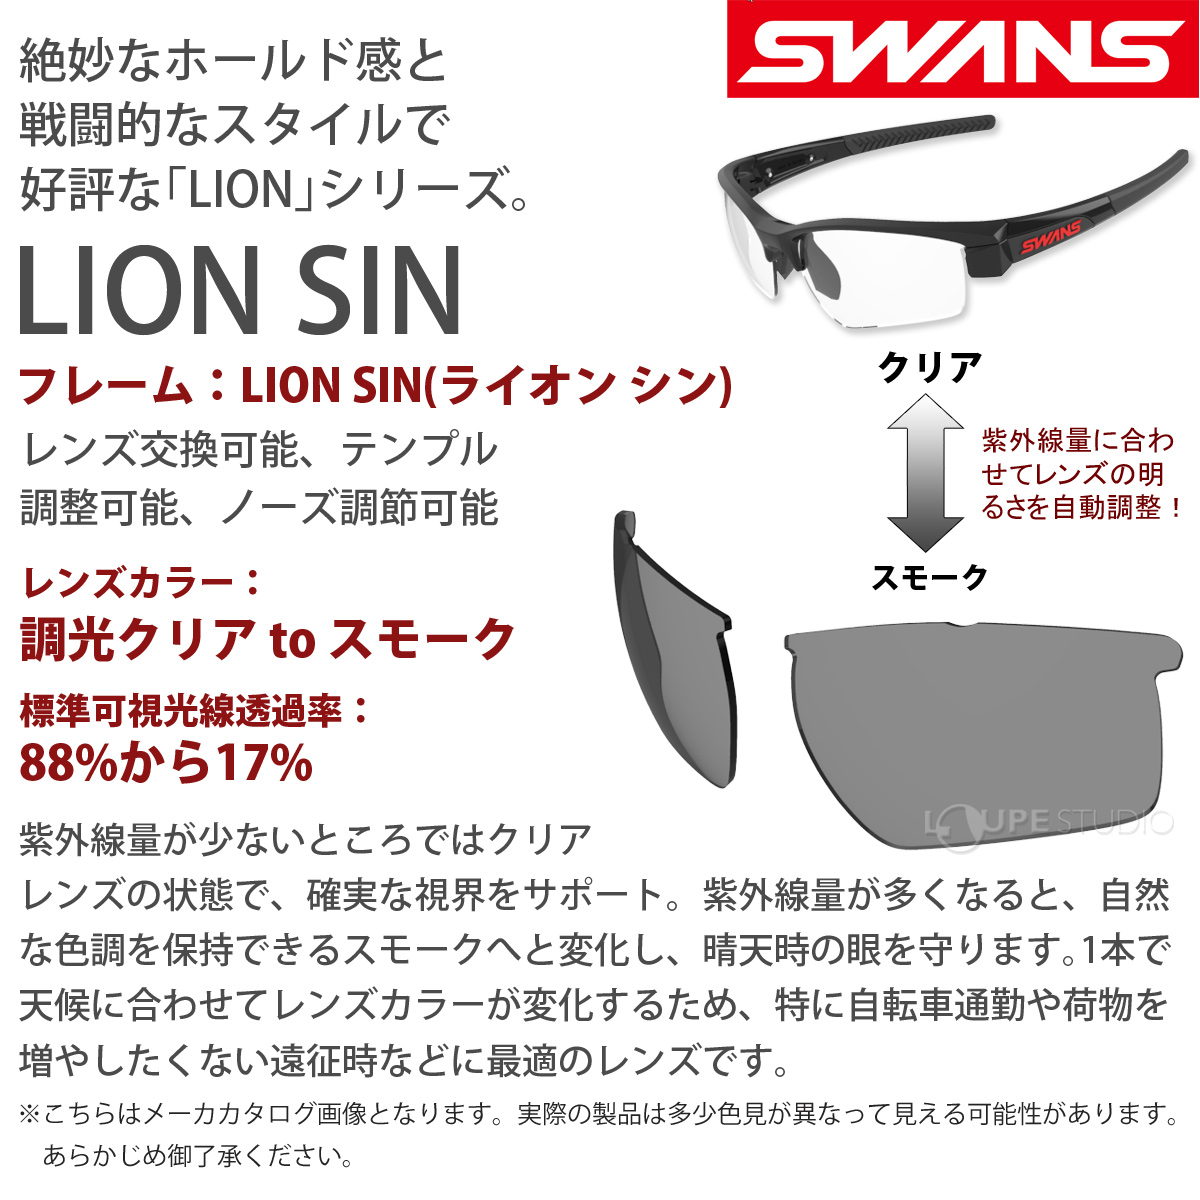 セレクトショップ購入 スワンズ ライオン シン(LION SIN) MGMR LI SIN